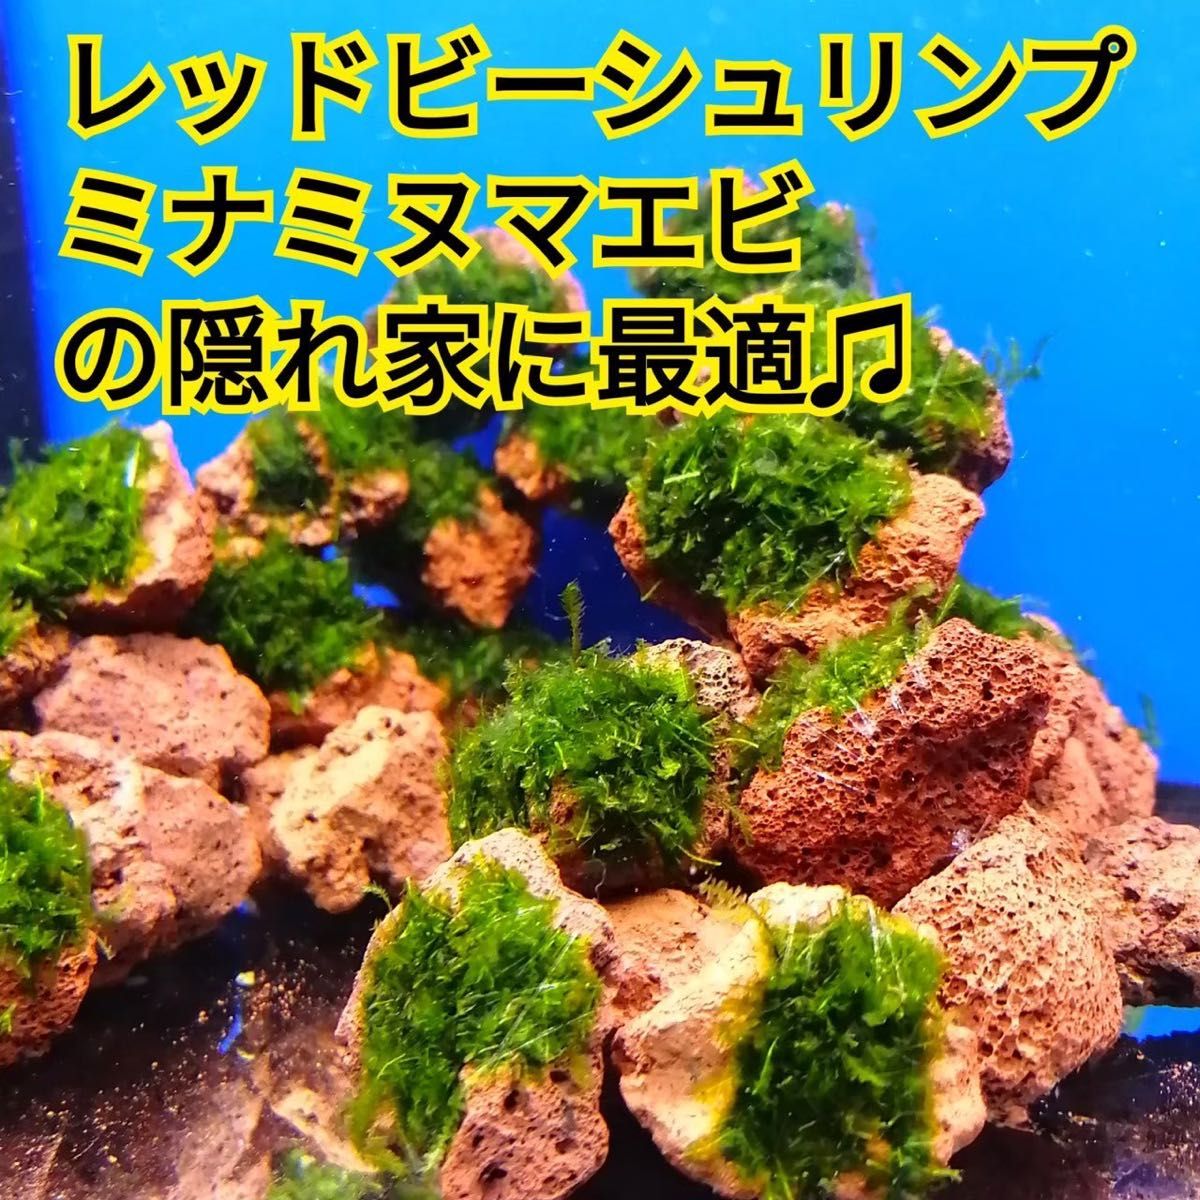 10個 南米ウィローモス 無農薬 赤 溶岩石 ミナミヌマエビ 水草 隠れ家 アクアリウム グッピー 金魚 メダカ レイアウト